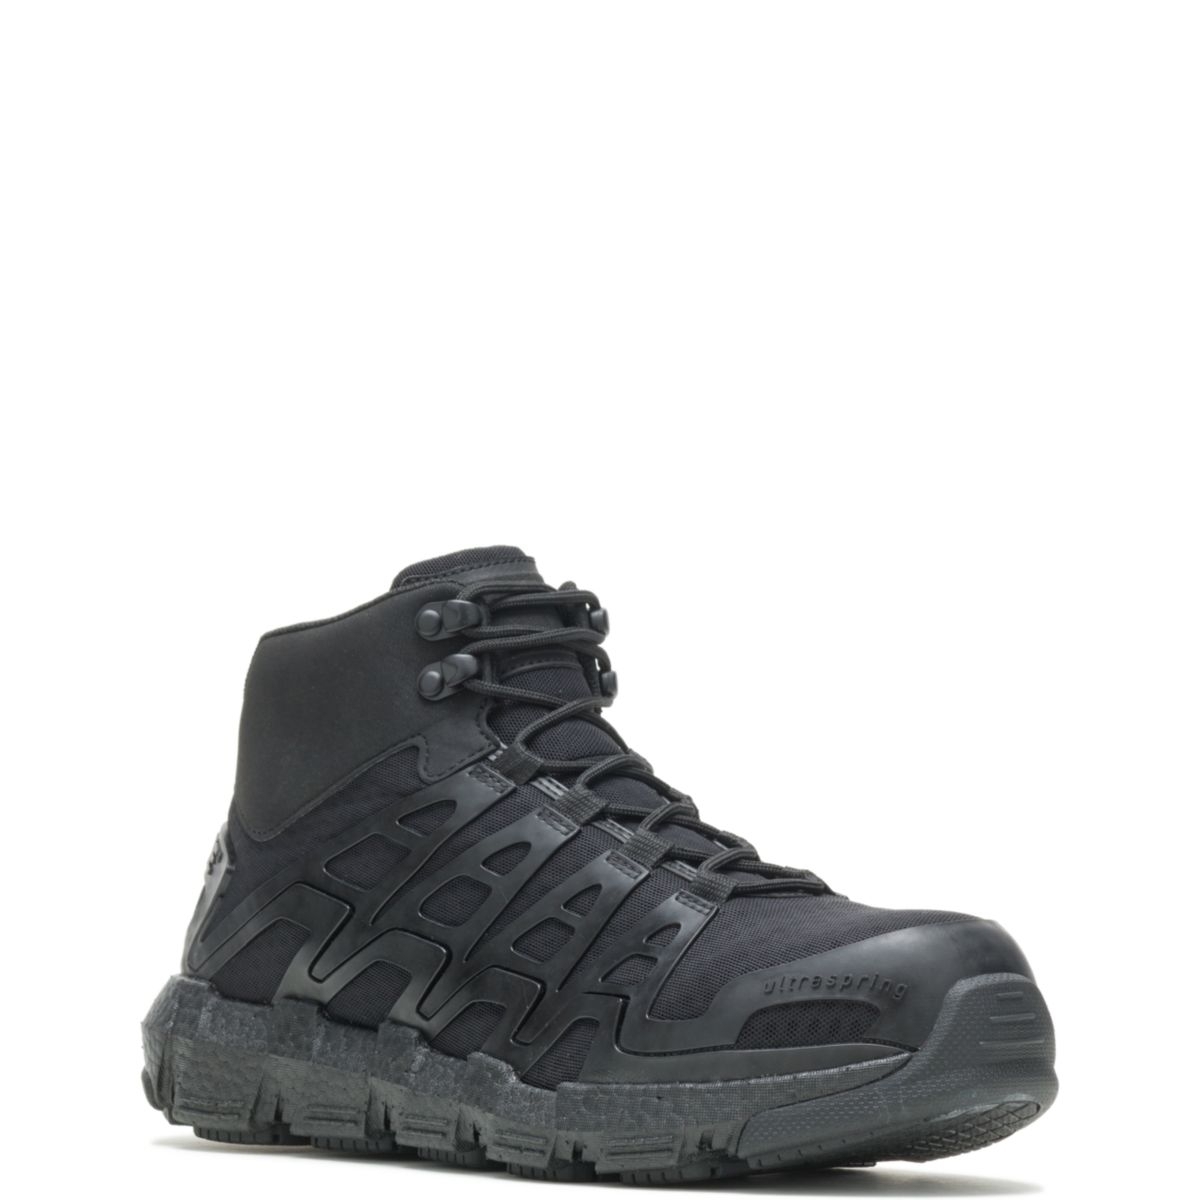 WOLVERINE Men's Rev Vent UltraSpringâ¢ DuraShocksÂ® CarbonMAXÂ® Composite Toe Work Boot Black - W211020 BLACK - BLACK, 12